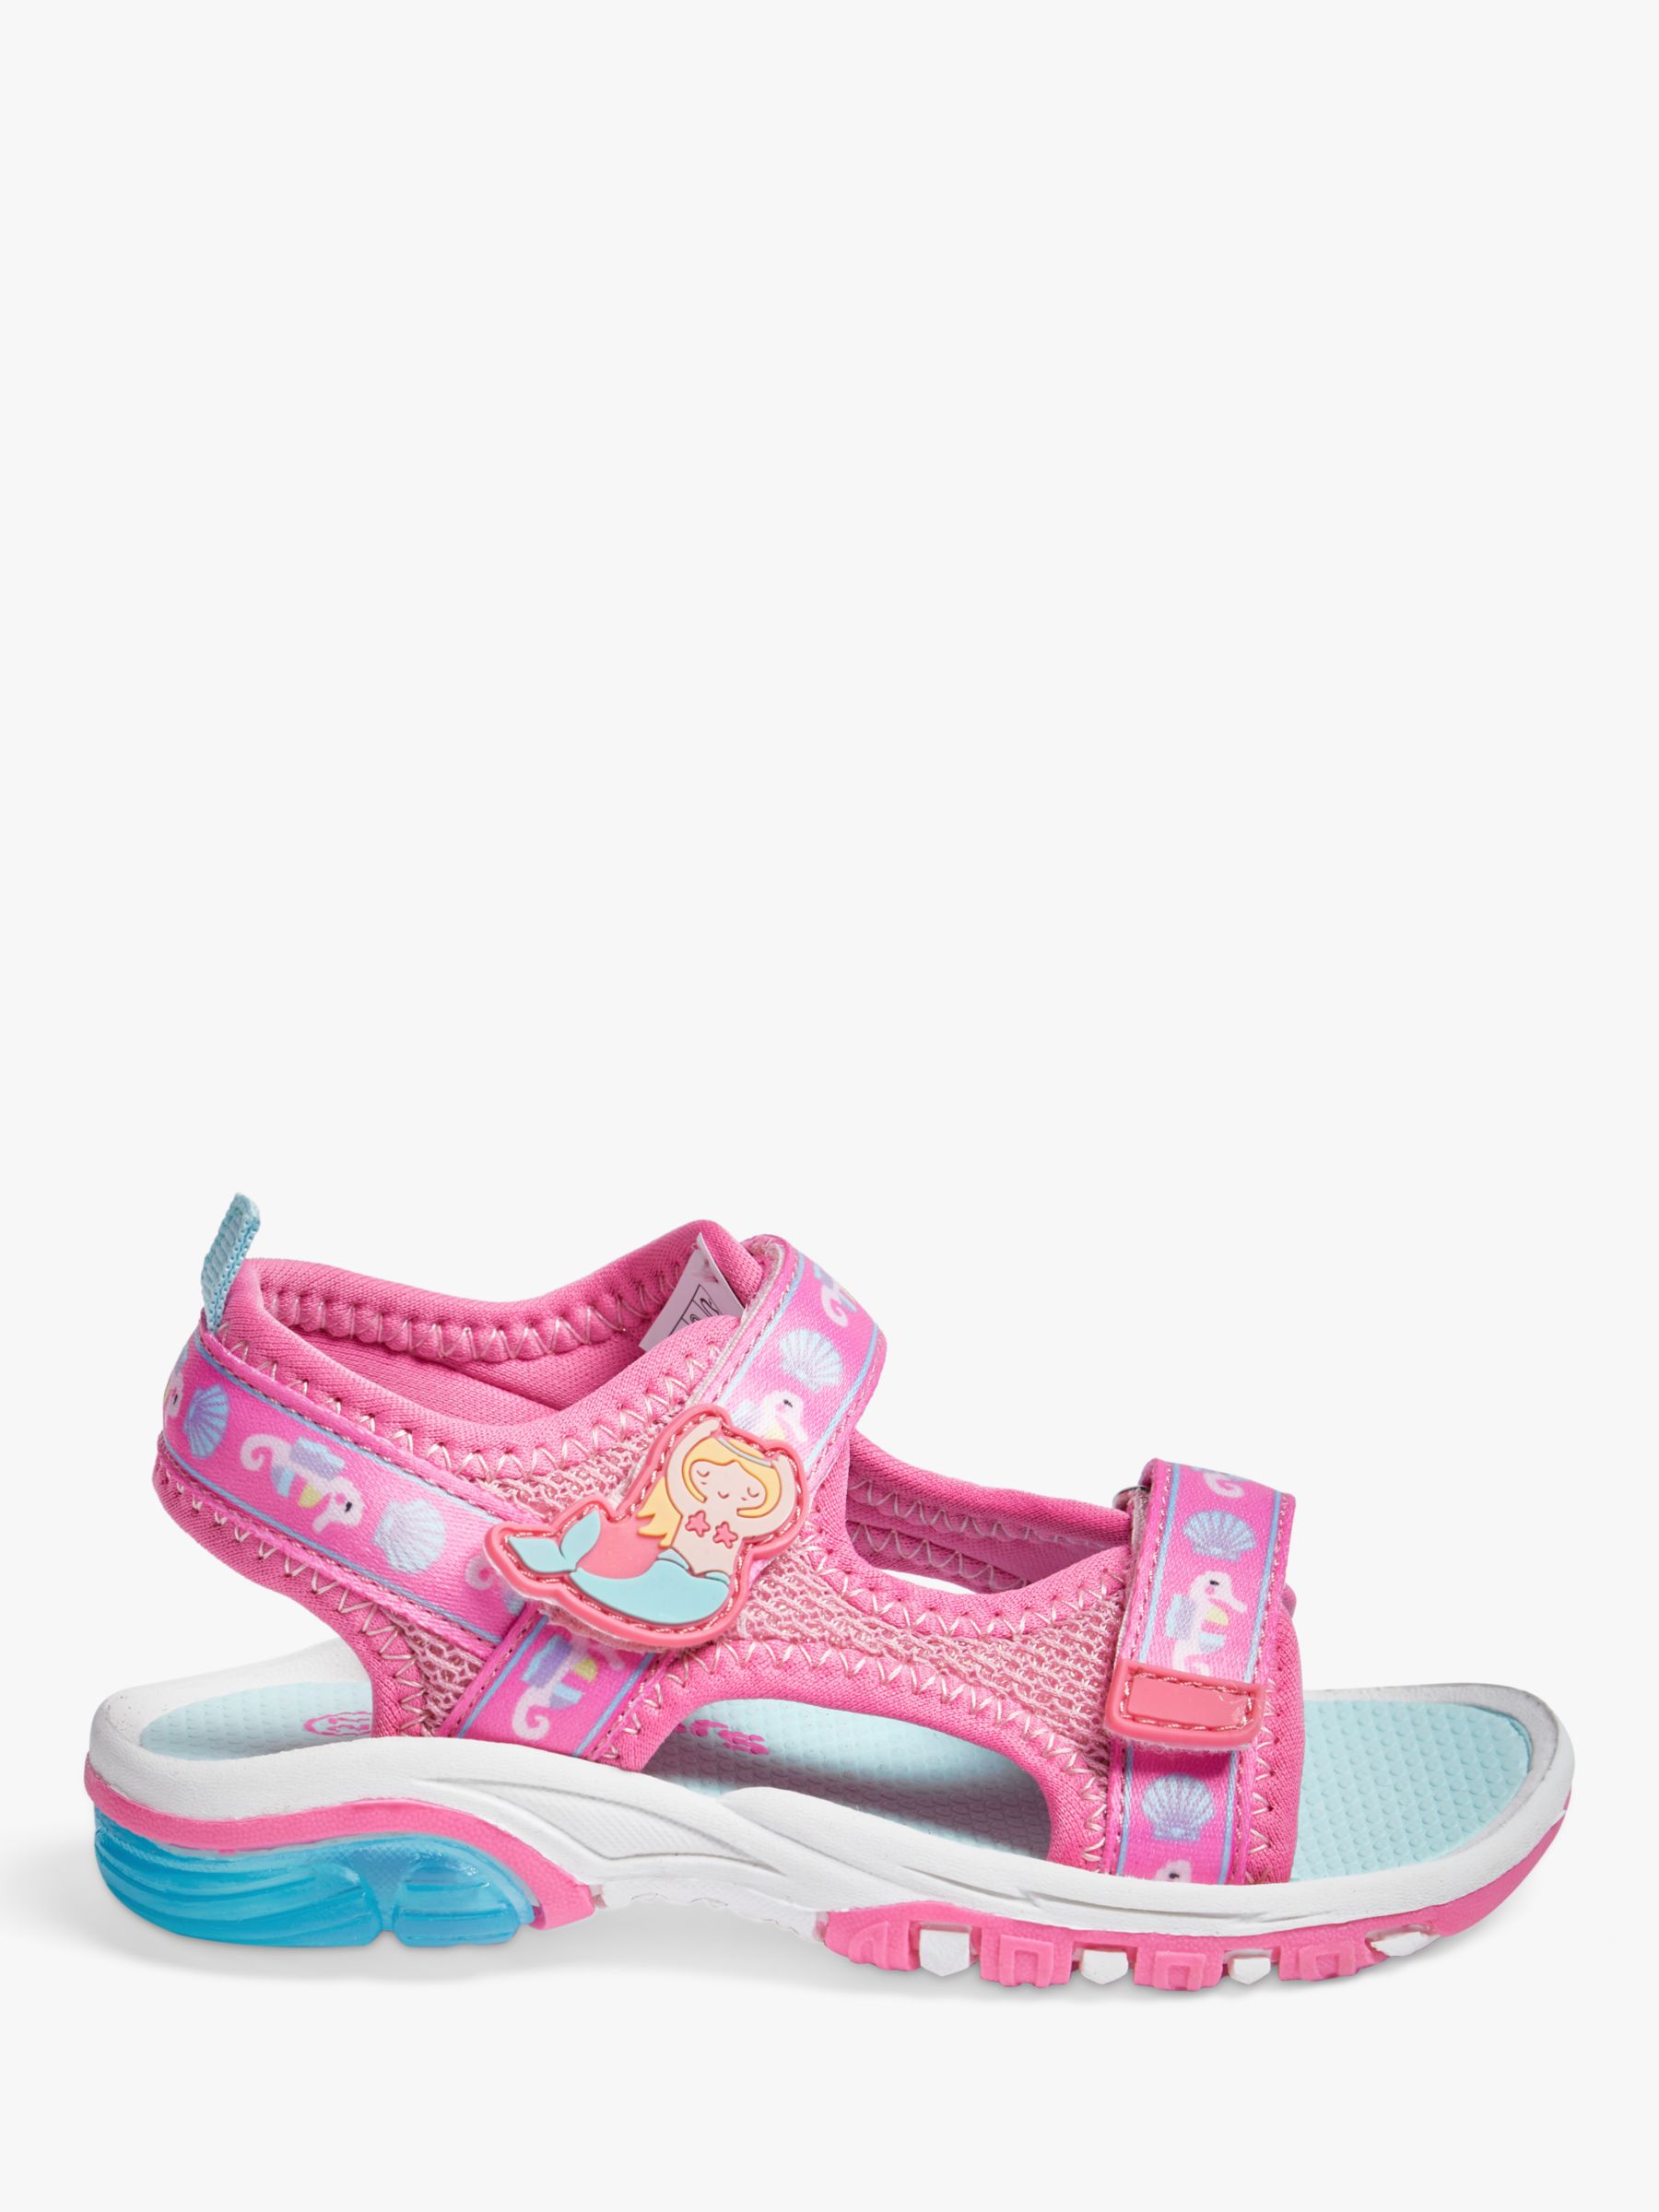 Pod Children's Alyssa Light Up Mermaid Sandals, Pink